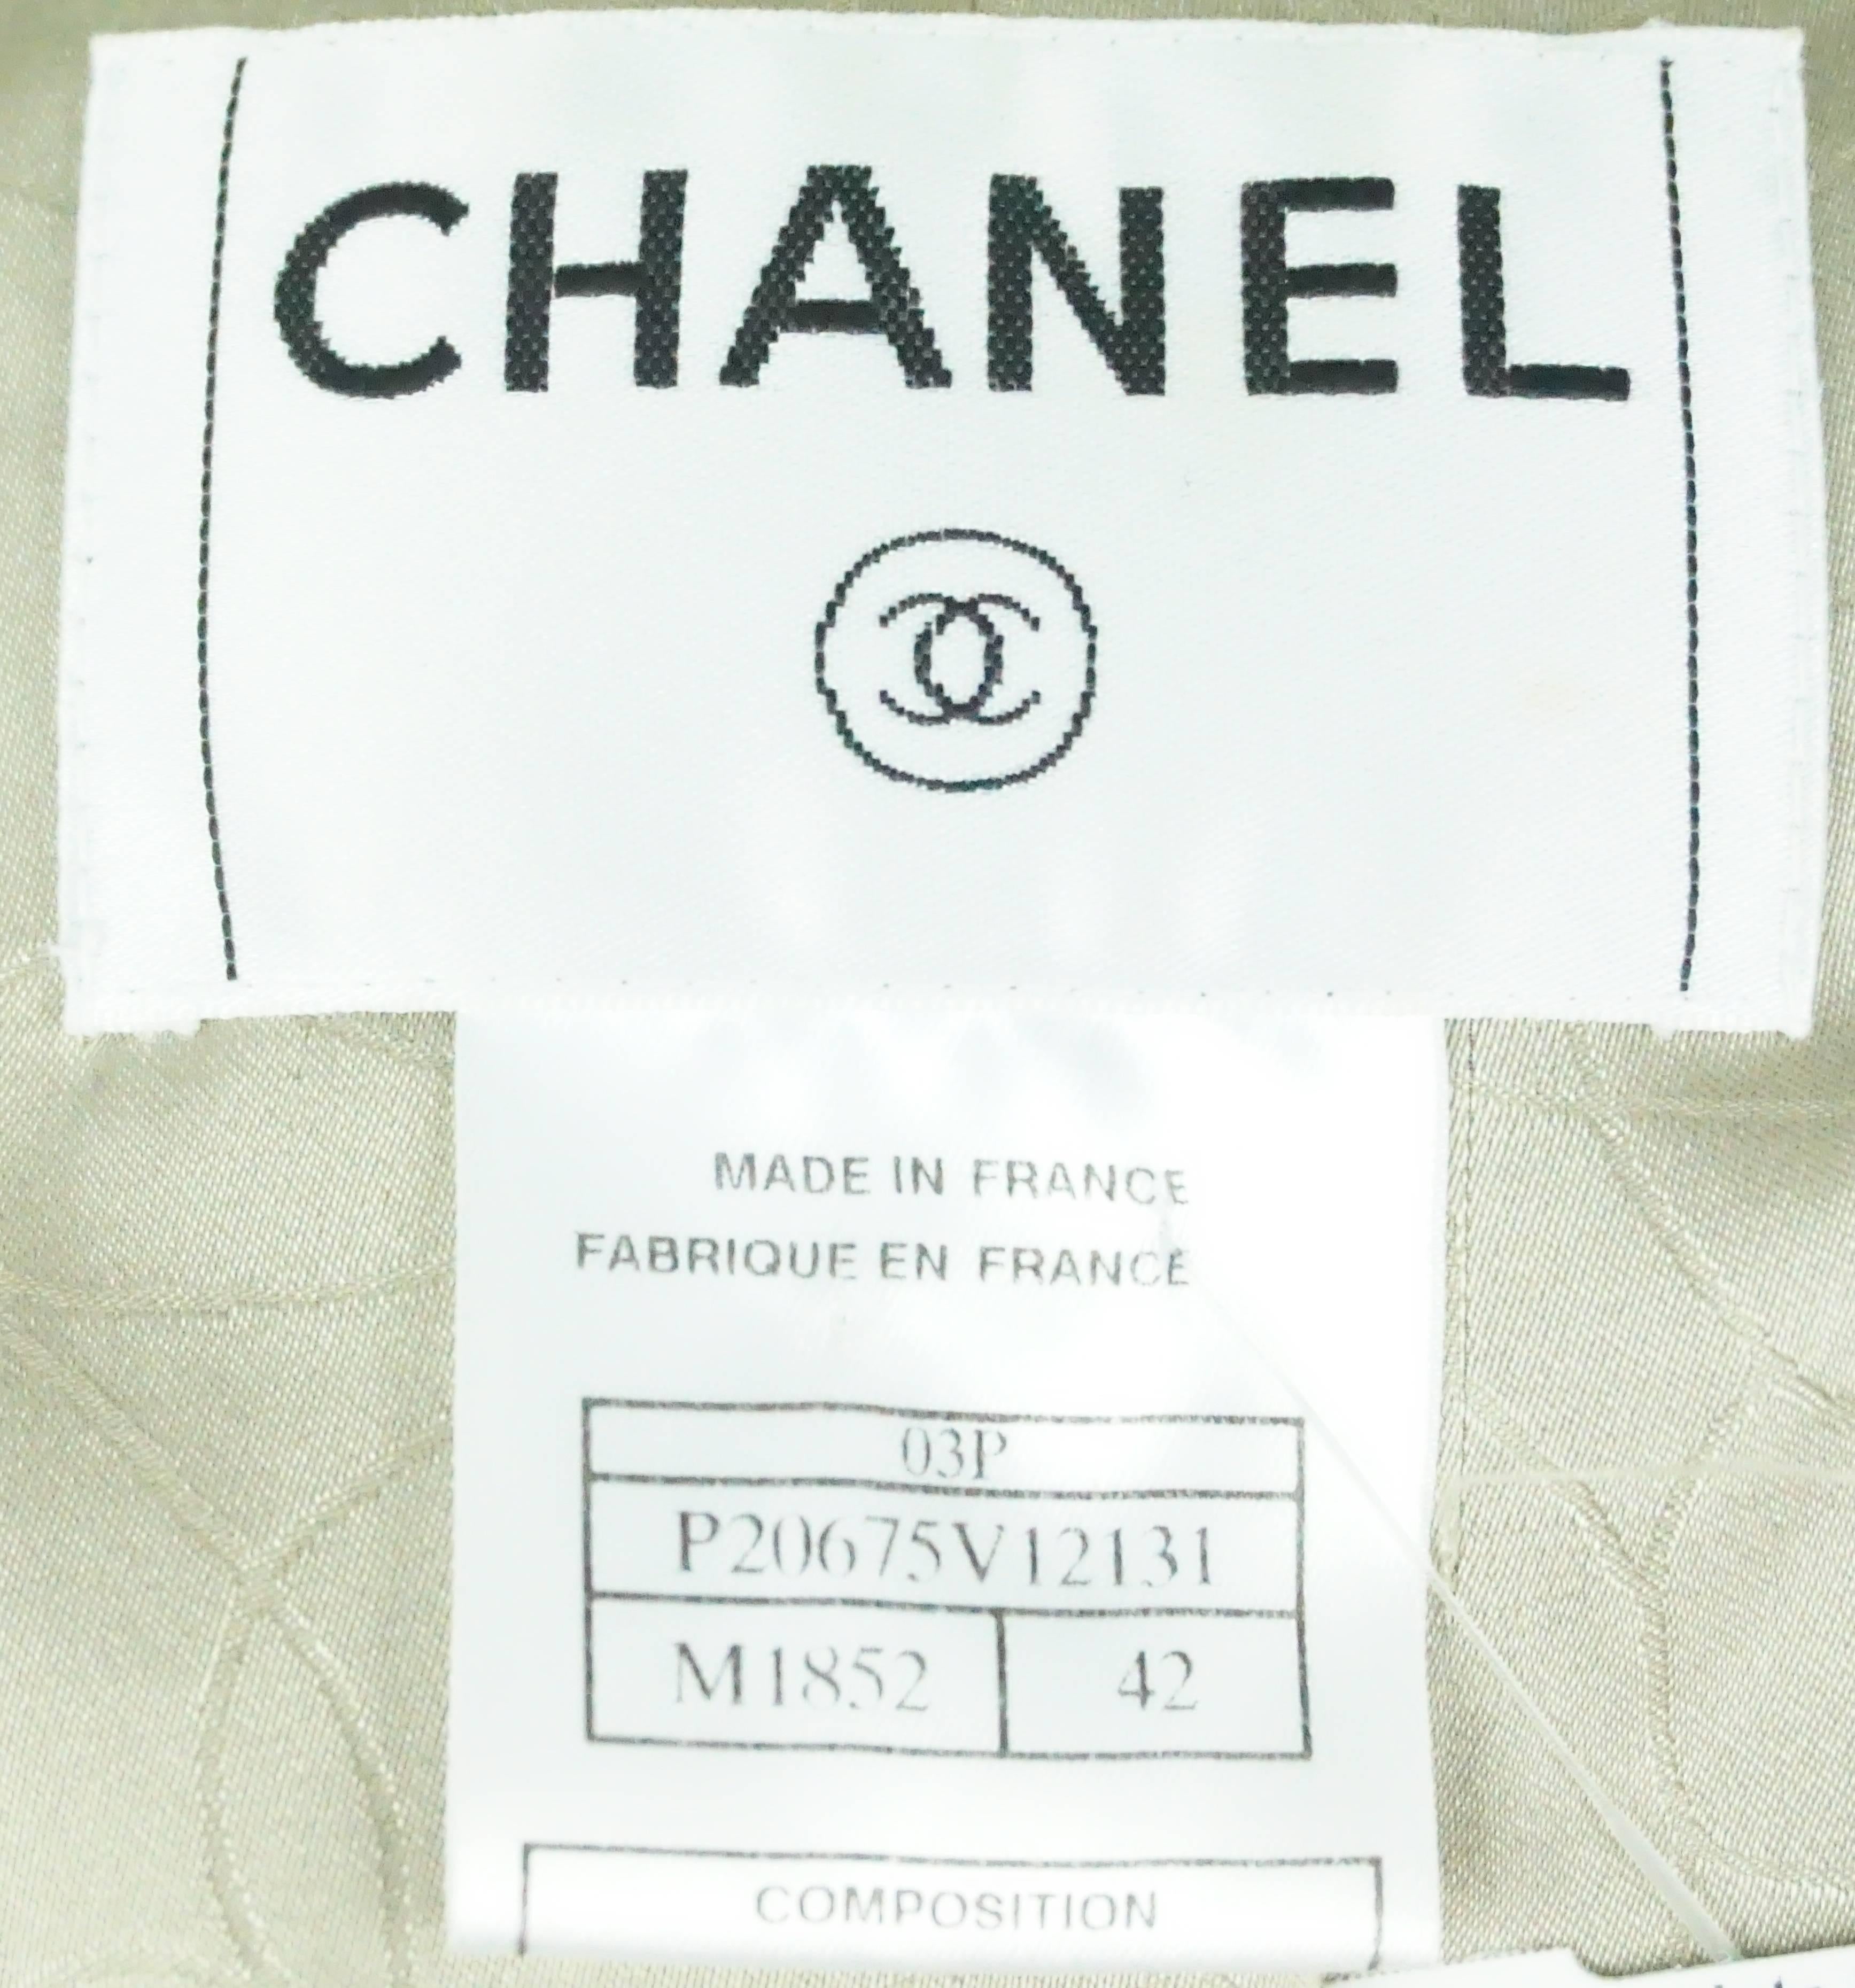 Chanel Earthtone Cotton Tweed Jacket - 42 - 03P 2